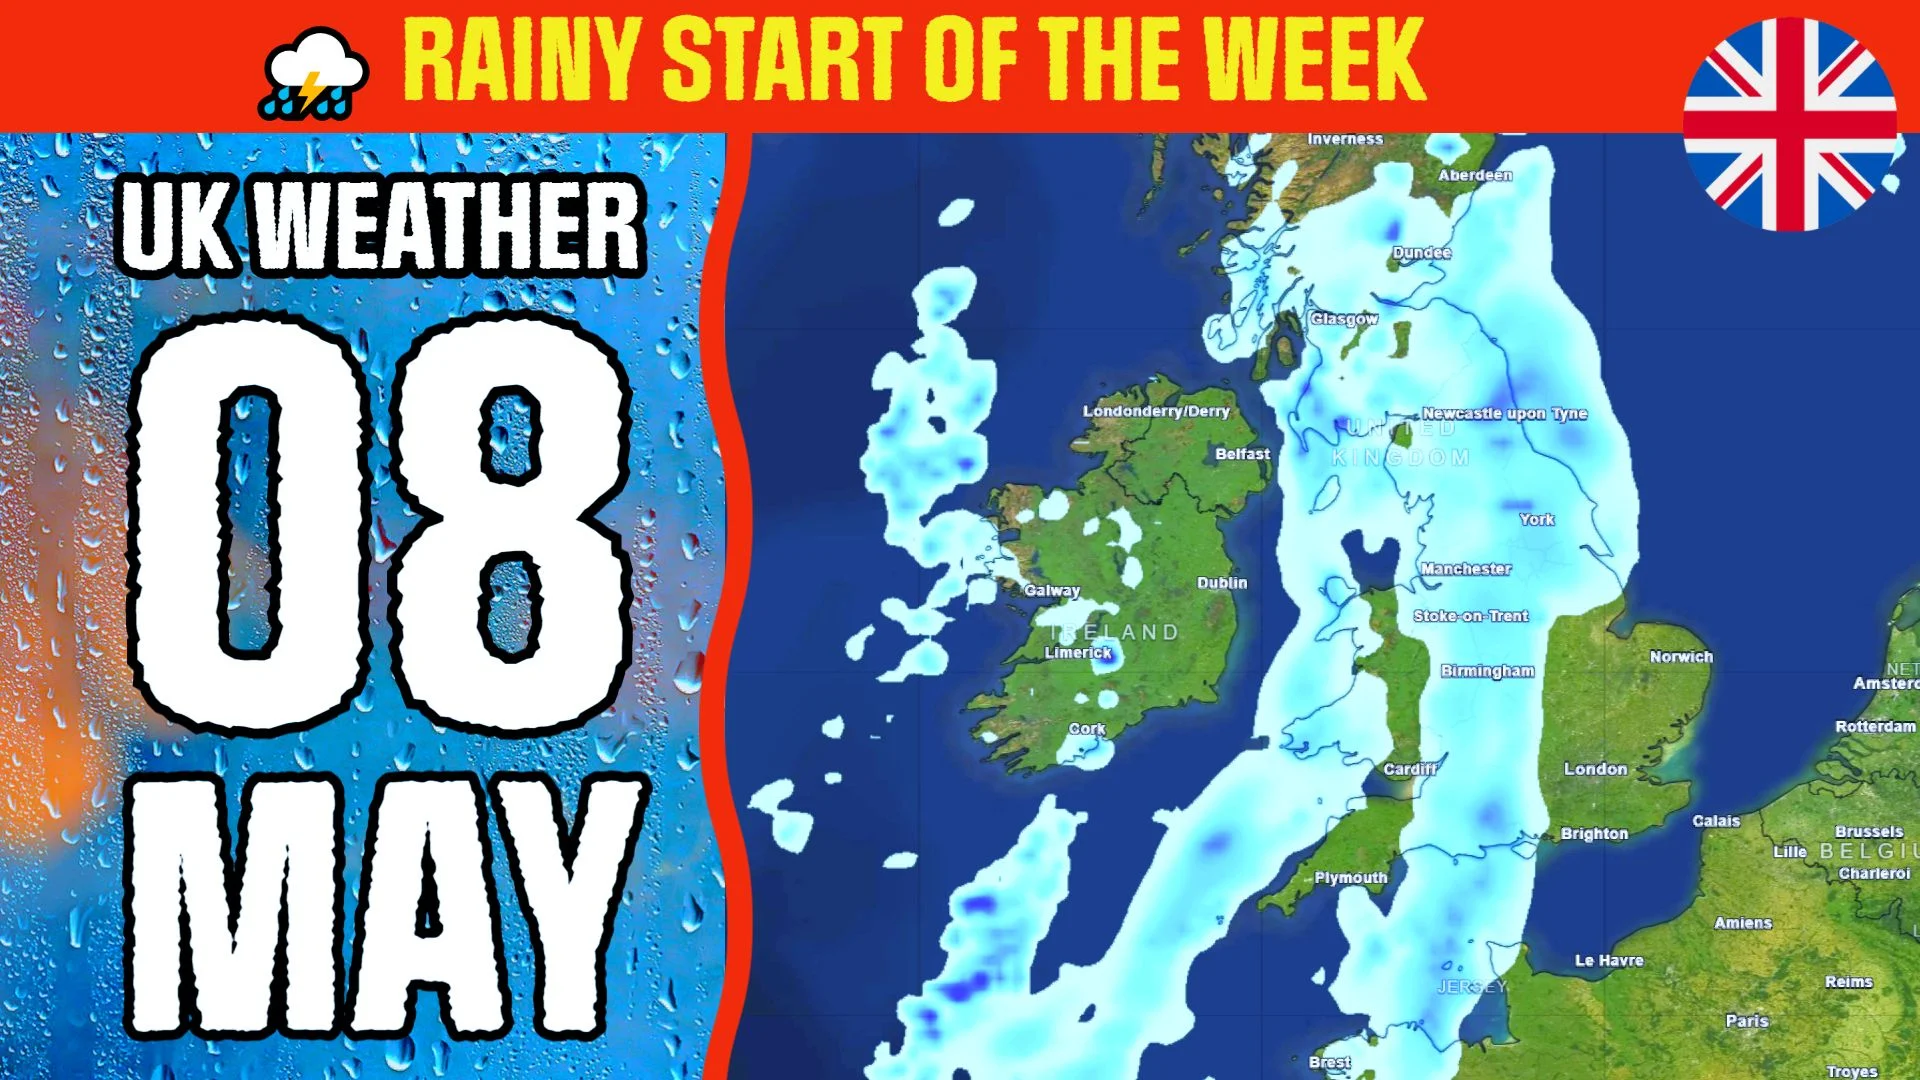 Rainy start of the week : May 8 UK Weather forecast